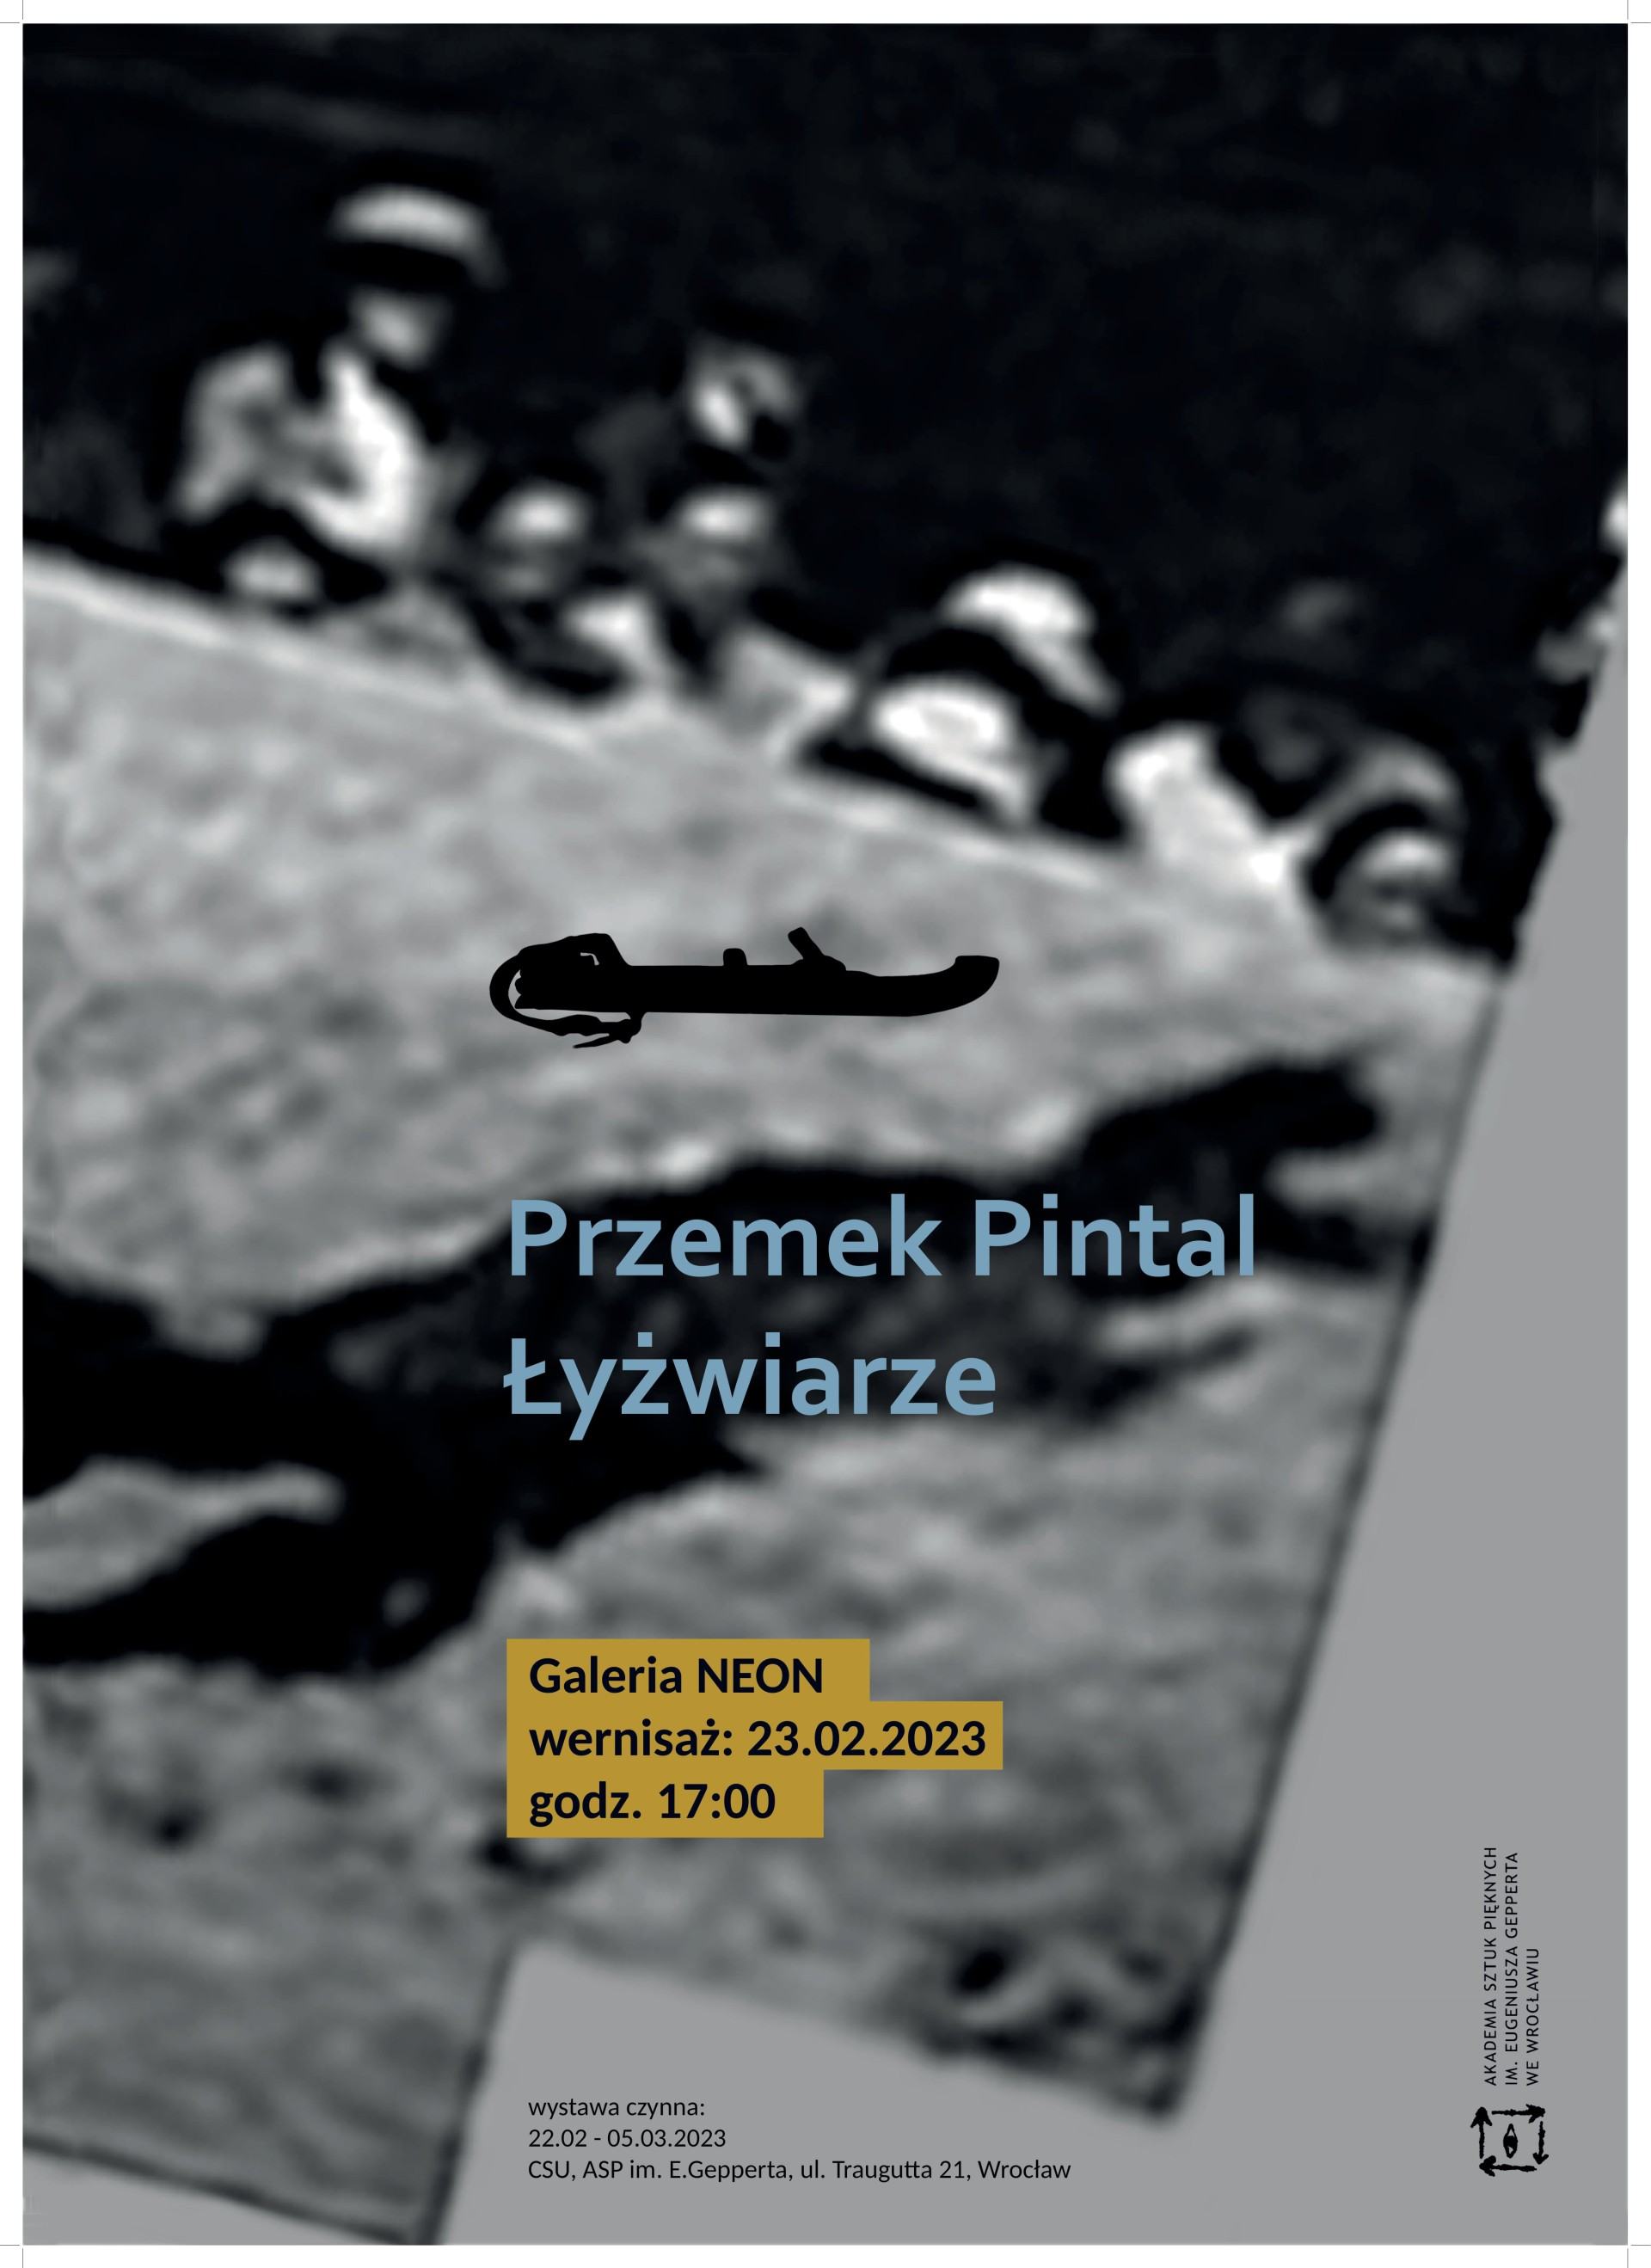 P. Pintal, Łyżwairze